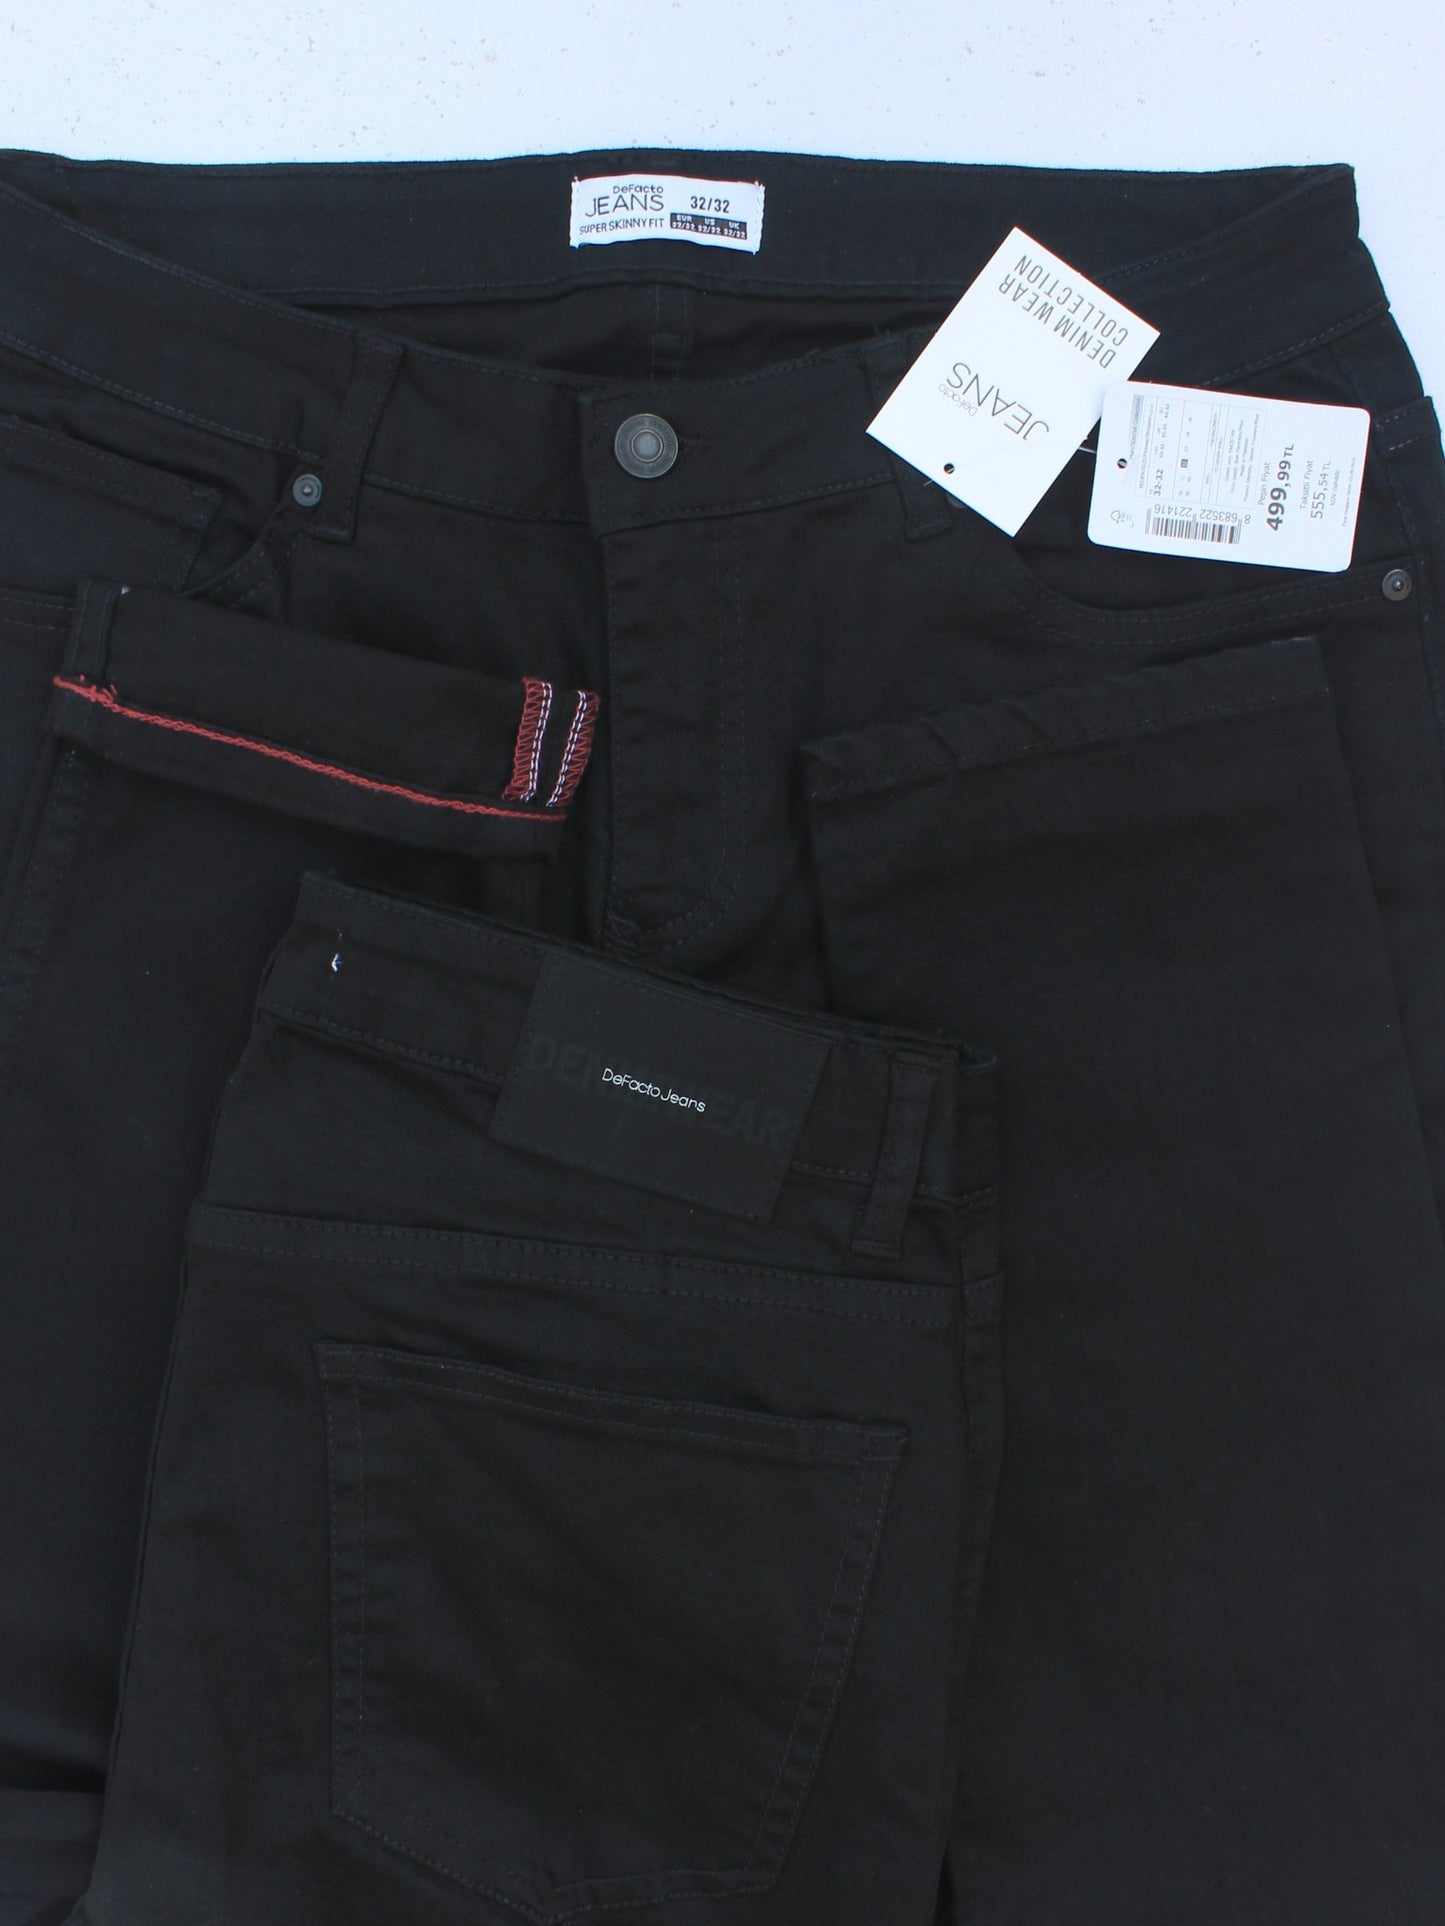 Men's Super Skinny Fit Black Jean DL4222